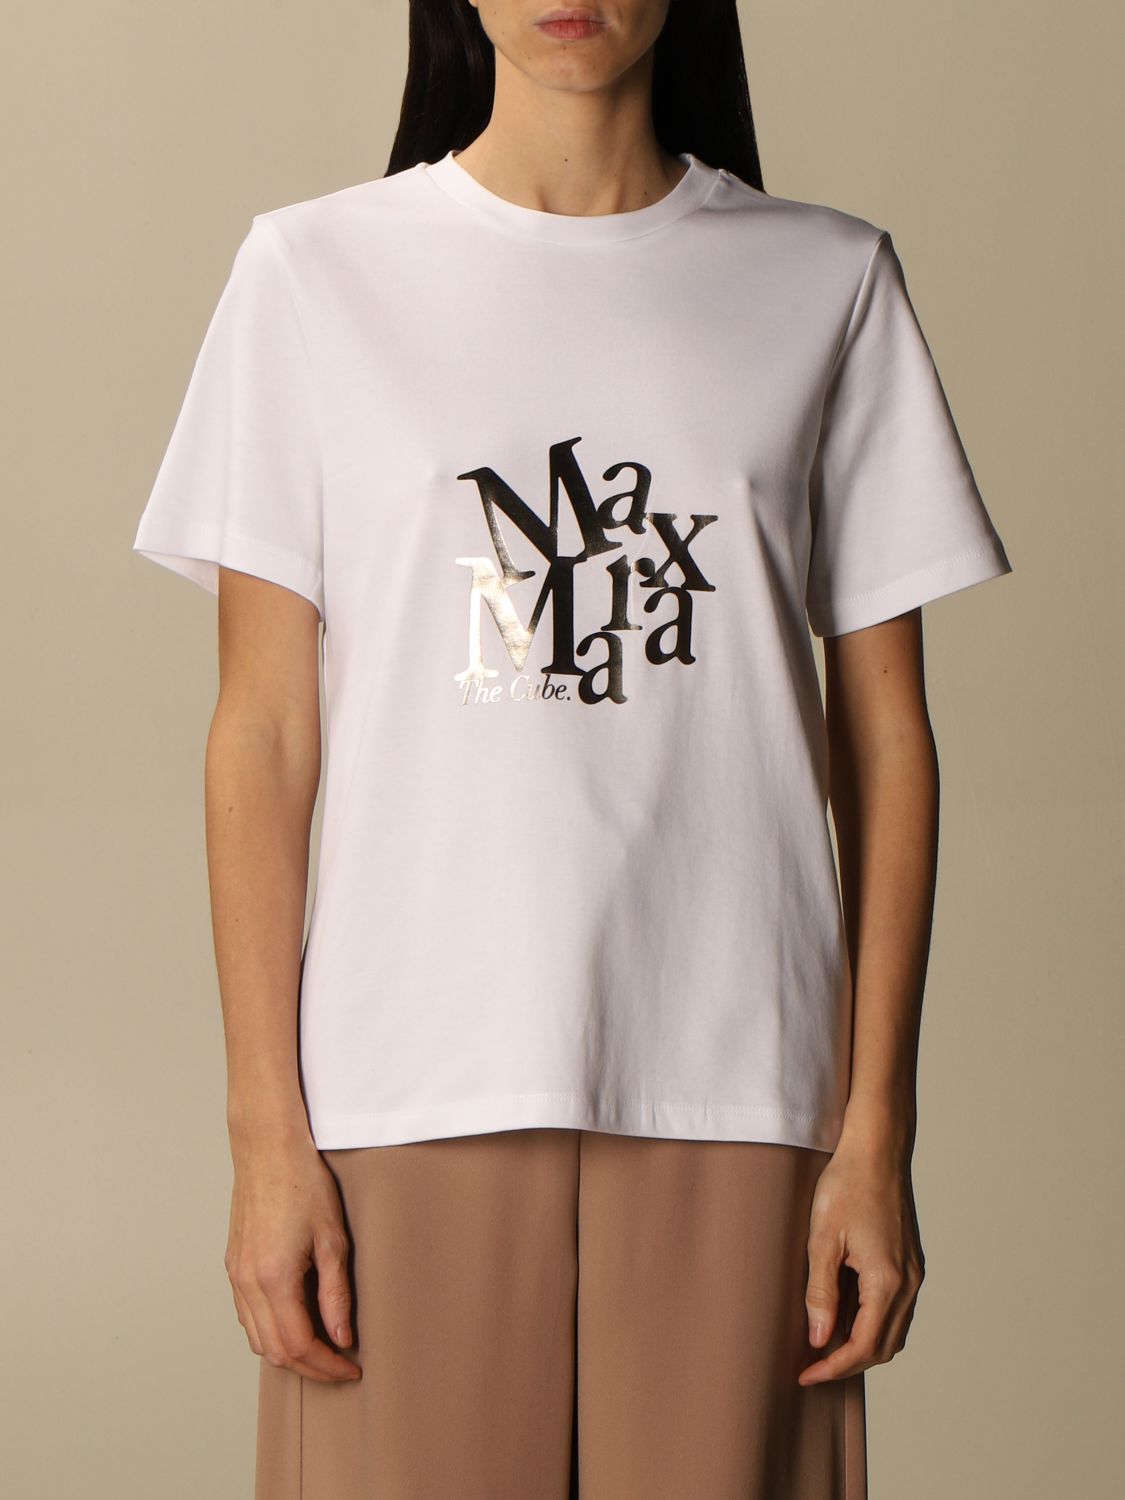 Buy > t shirt in max > in stock